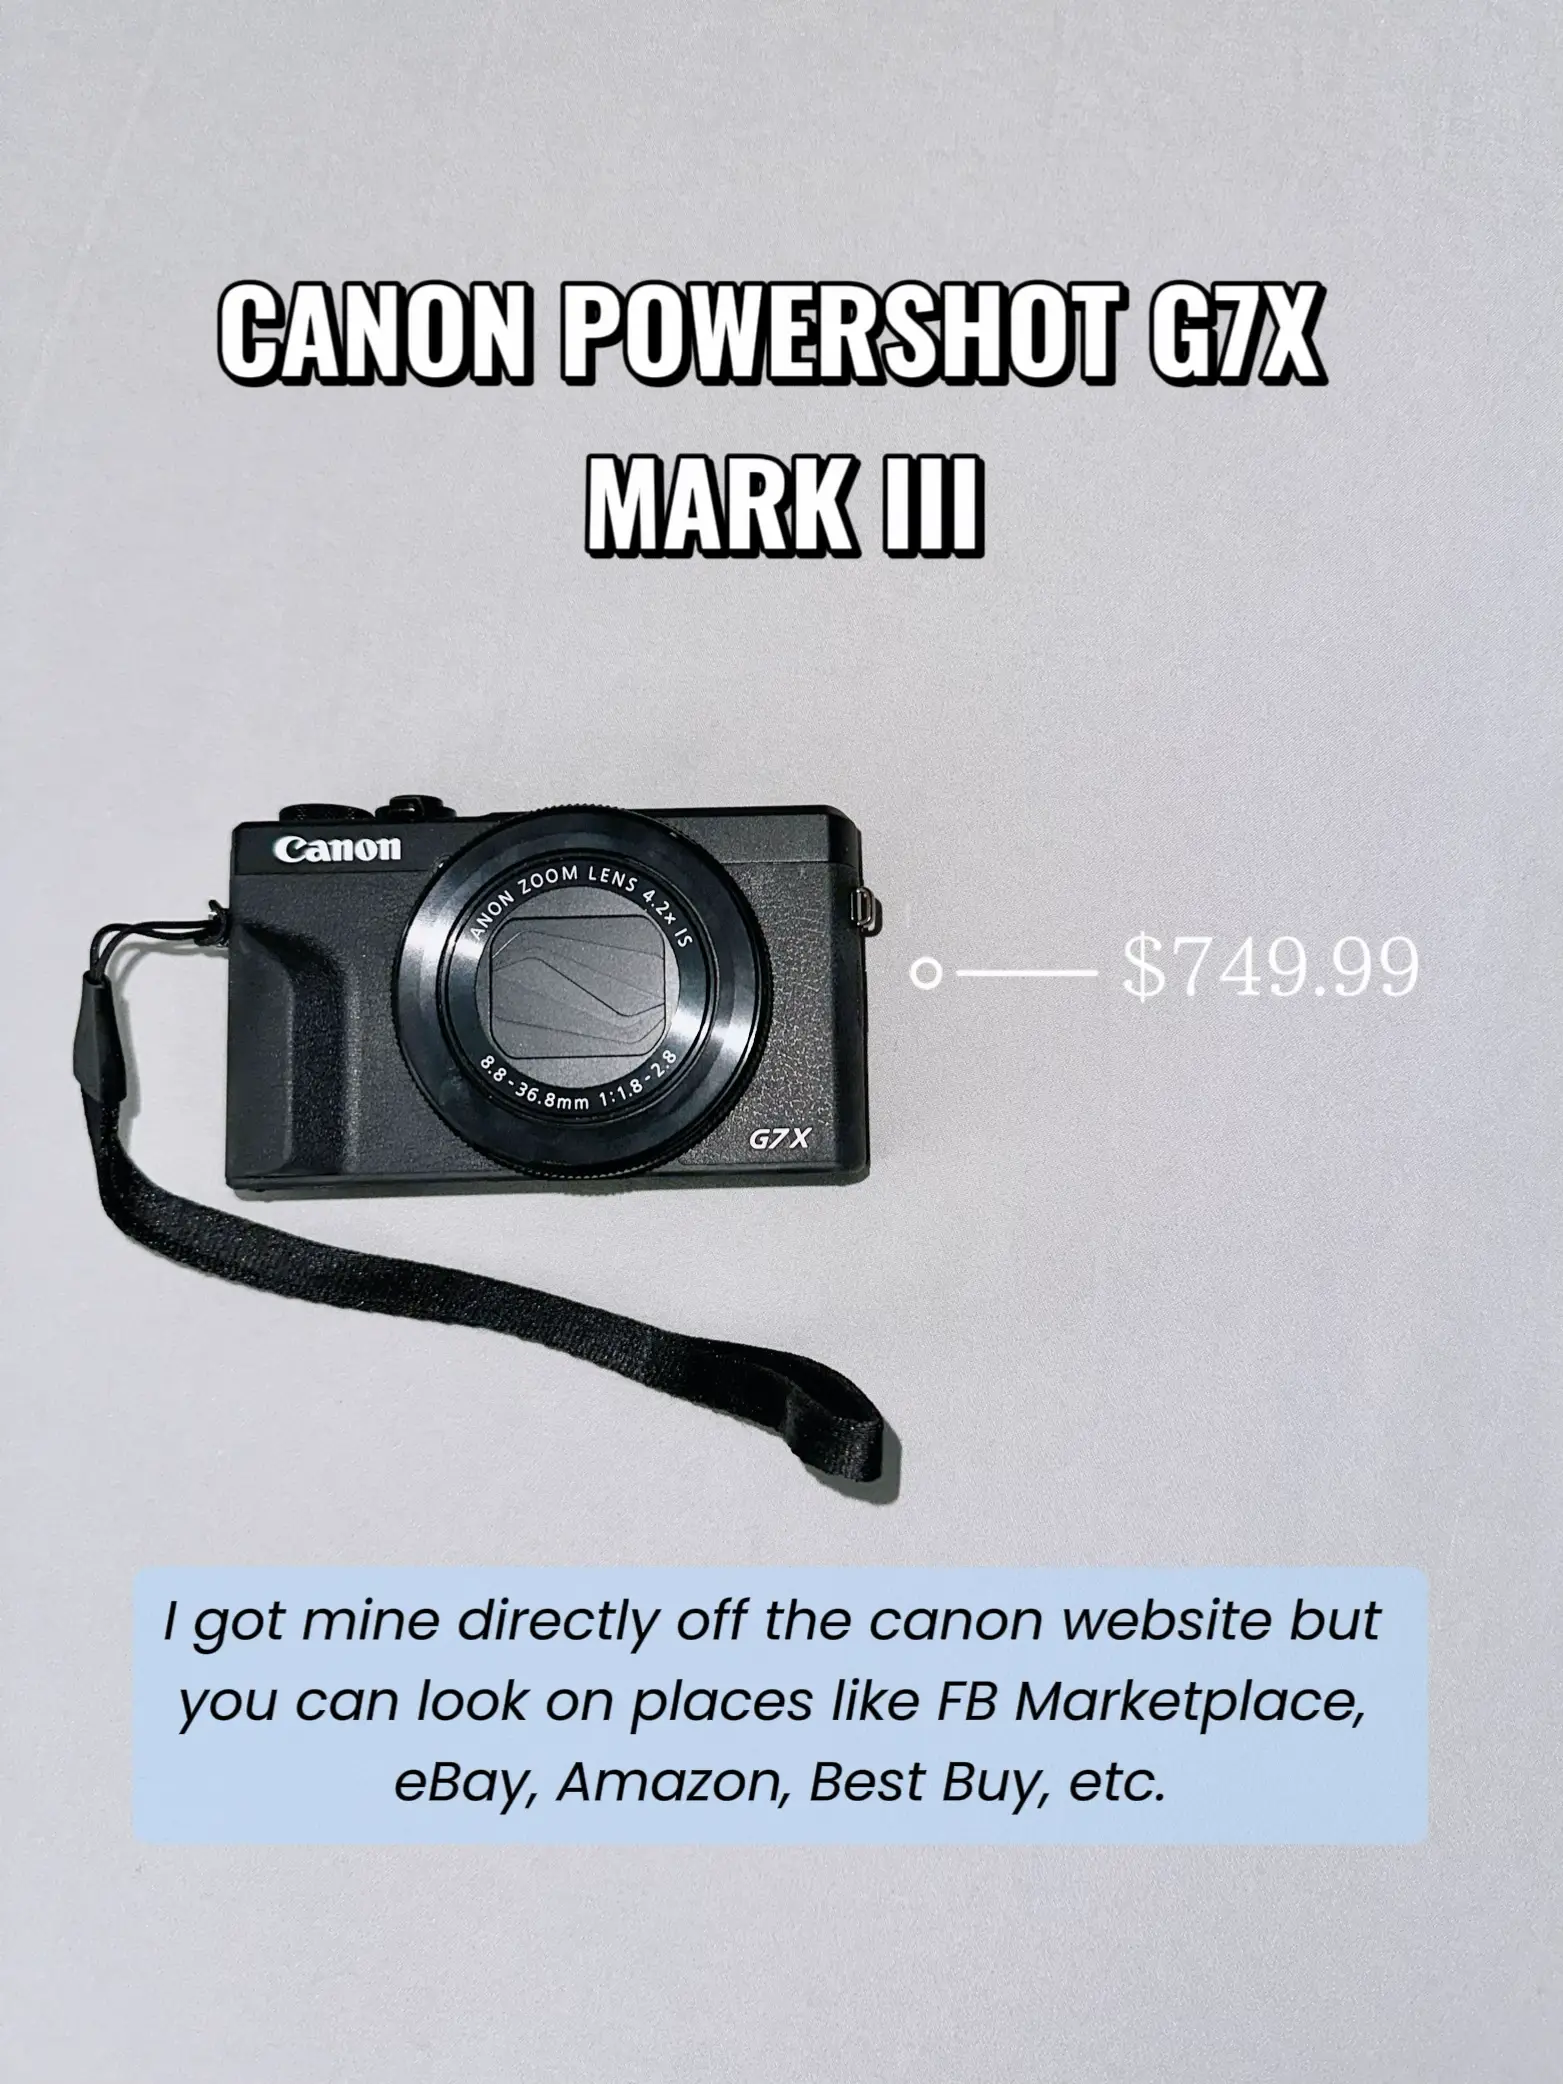 Cámara Canon G7X Mark II F1.8-2.8, CMOS, Digic 7 de segunda mano